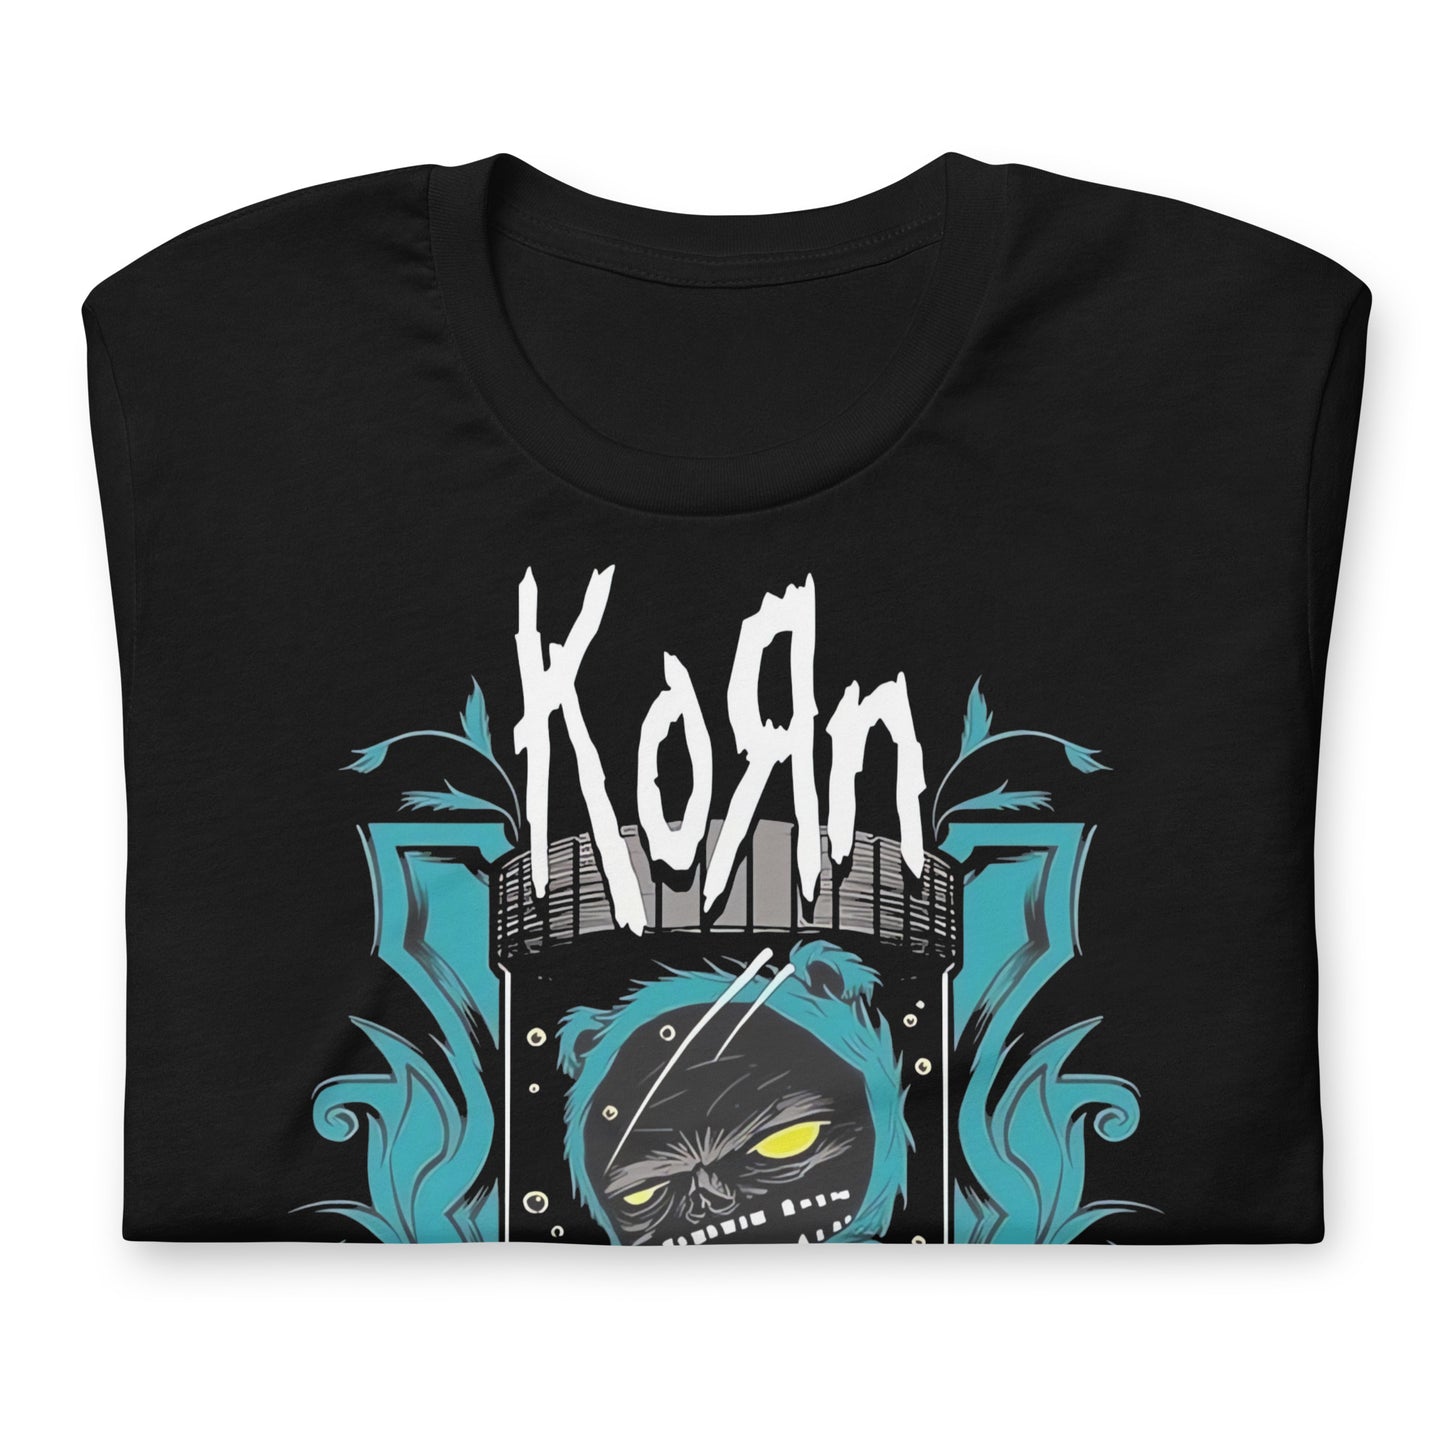 Camiseta Korn Monster, Disponible en la mejor tienda online para comprar tu merch favorita, la mejor Calidad, compra Ahora en Superstar! Camiseta Korn Monster, Disponible en la mejor tienda online para comprar tu merch favorita, la mejor Calidad, compra Ahora en Superstar! 